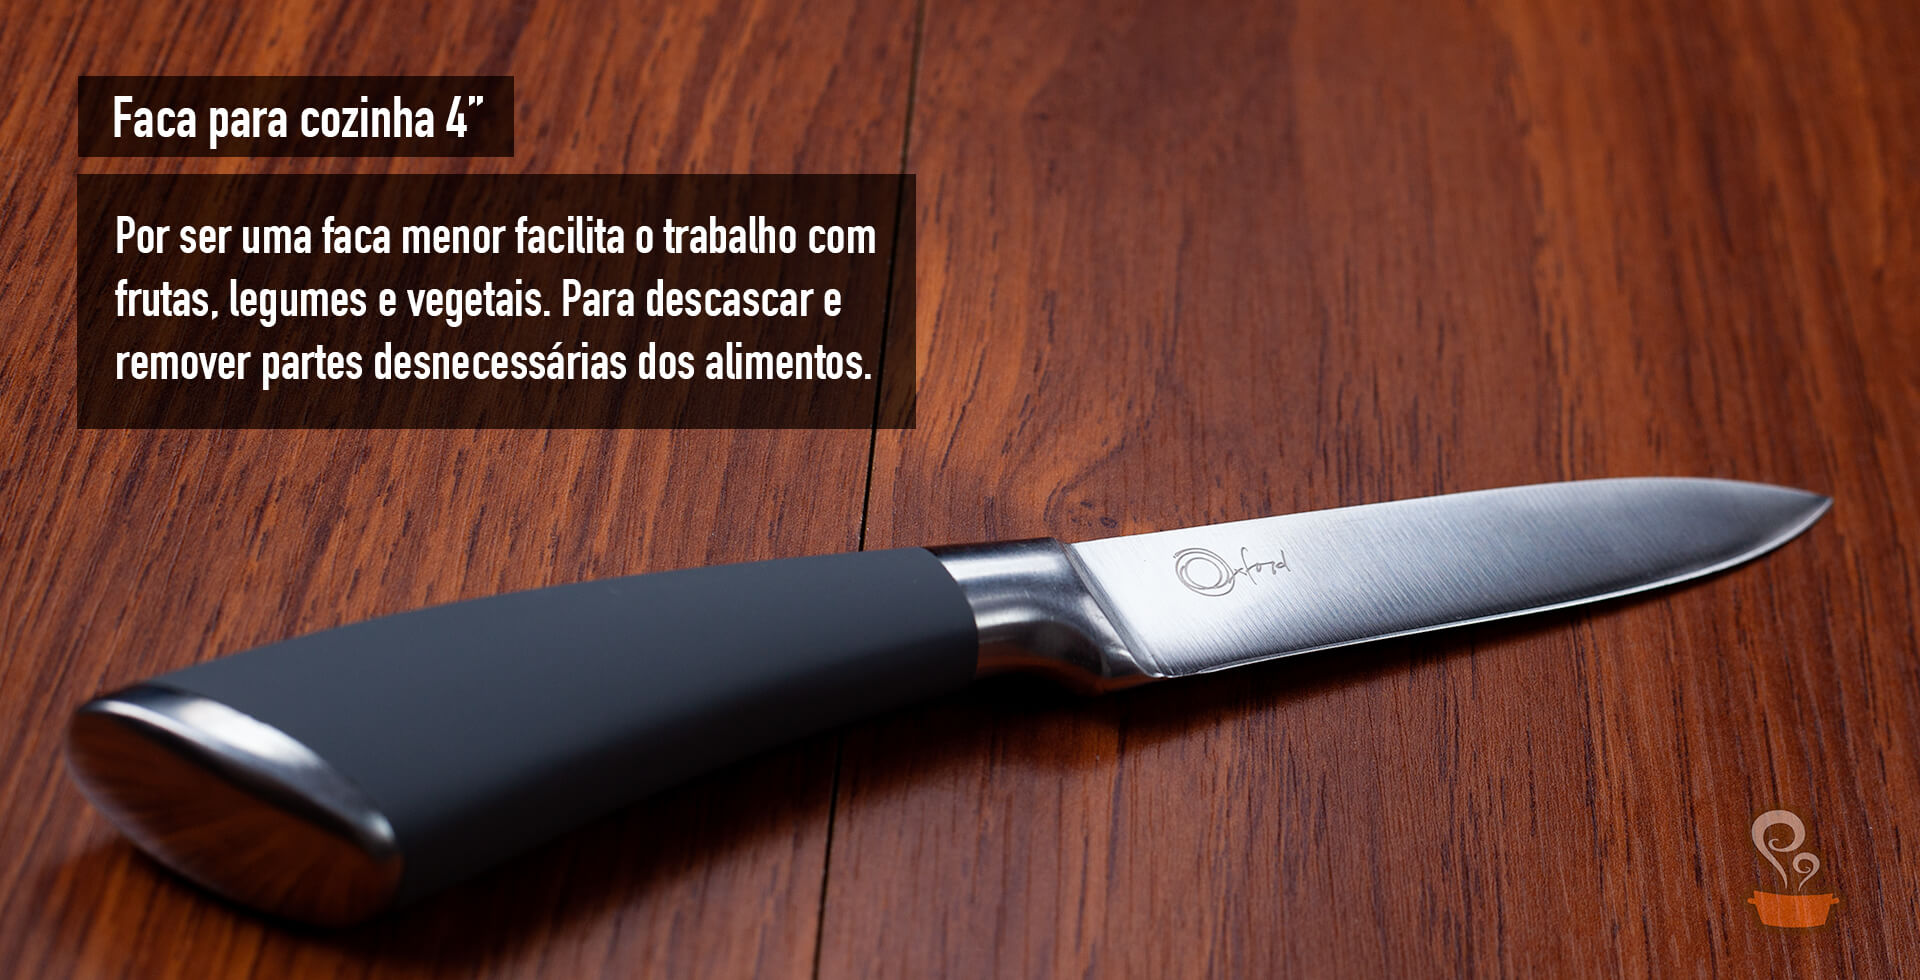 Tipos de facas - foto: naminhapanela.com